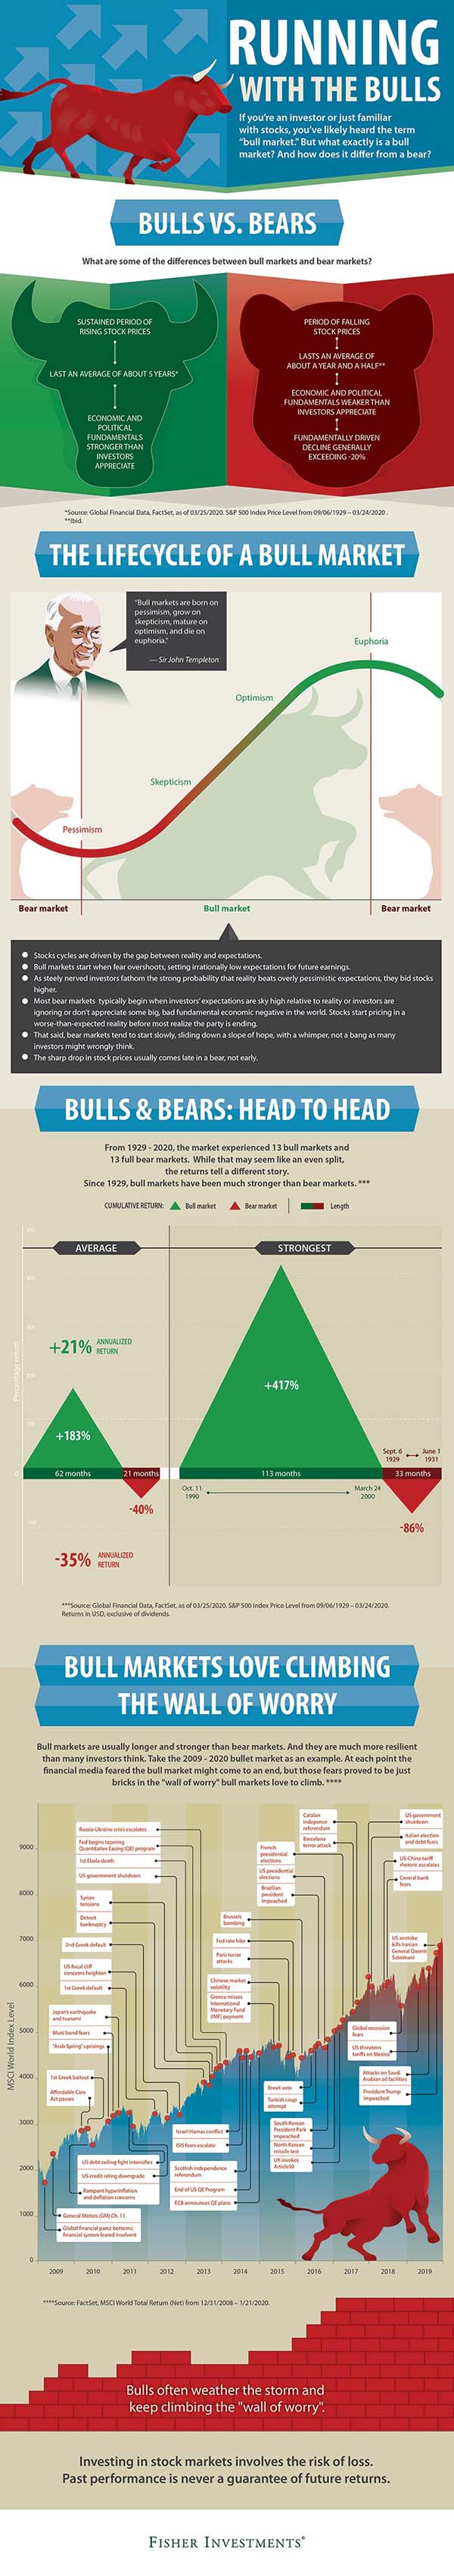 Infographic of Bull Markets Vs. Bear Markets